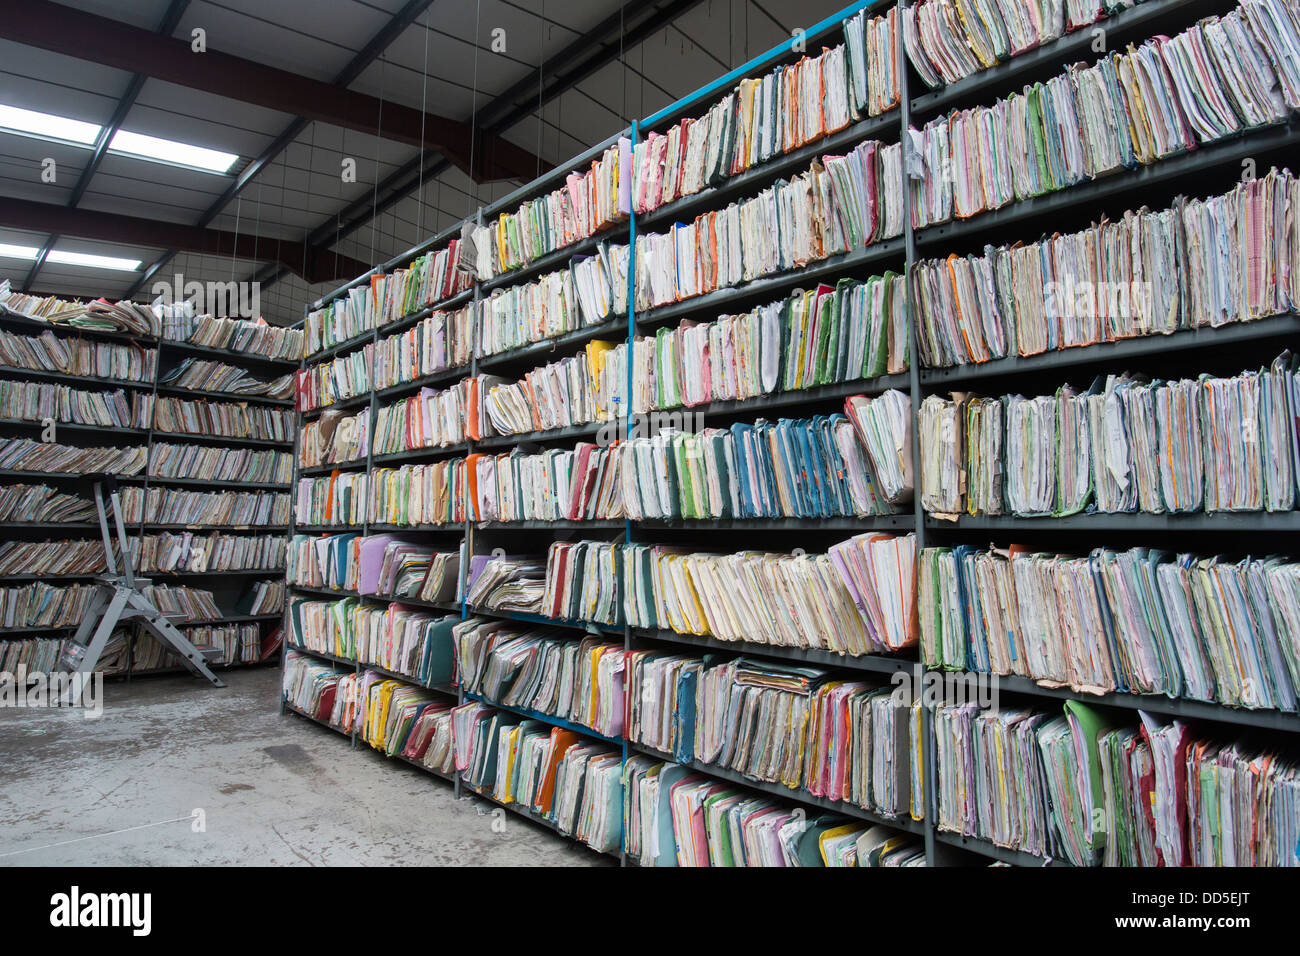 Ripiani in un magazzino farciti con documenti di office, le cartelle e i file che sono ora state trascritte su di archiviazione digitale. Foto Stock